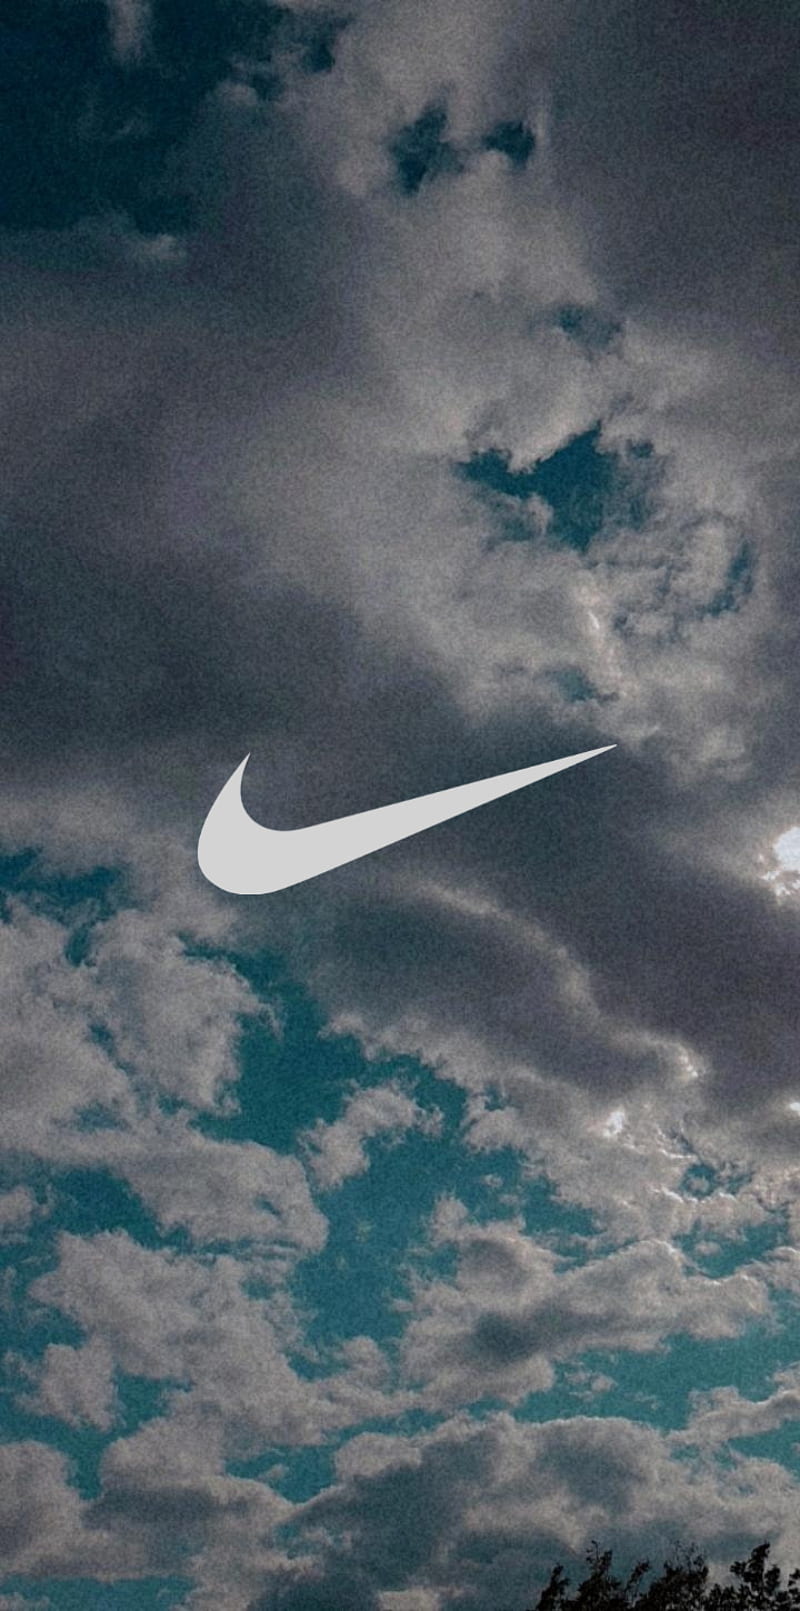 Bạn có đam mê với màu xanh và thương hiệu Nike? Hãy xem bức ảnh này ngay để tìm hiểu về sản phẩm Nike xanh độc đáo này!